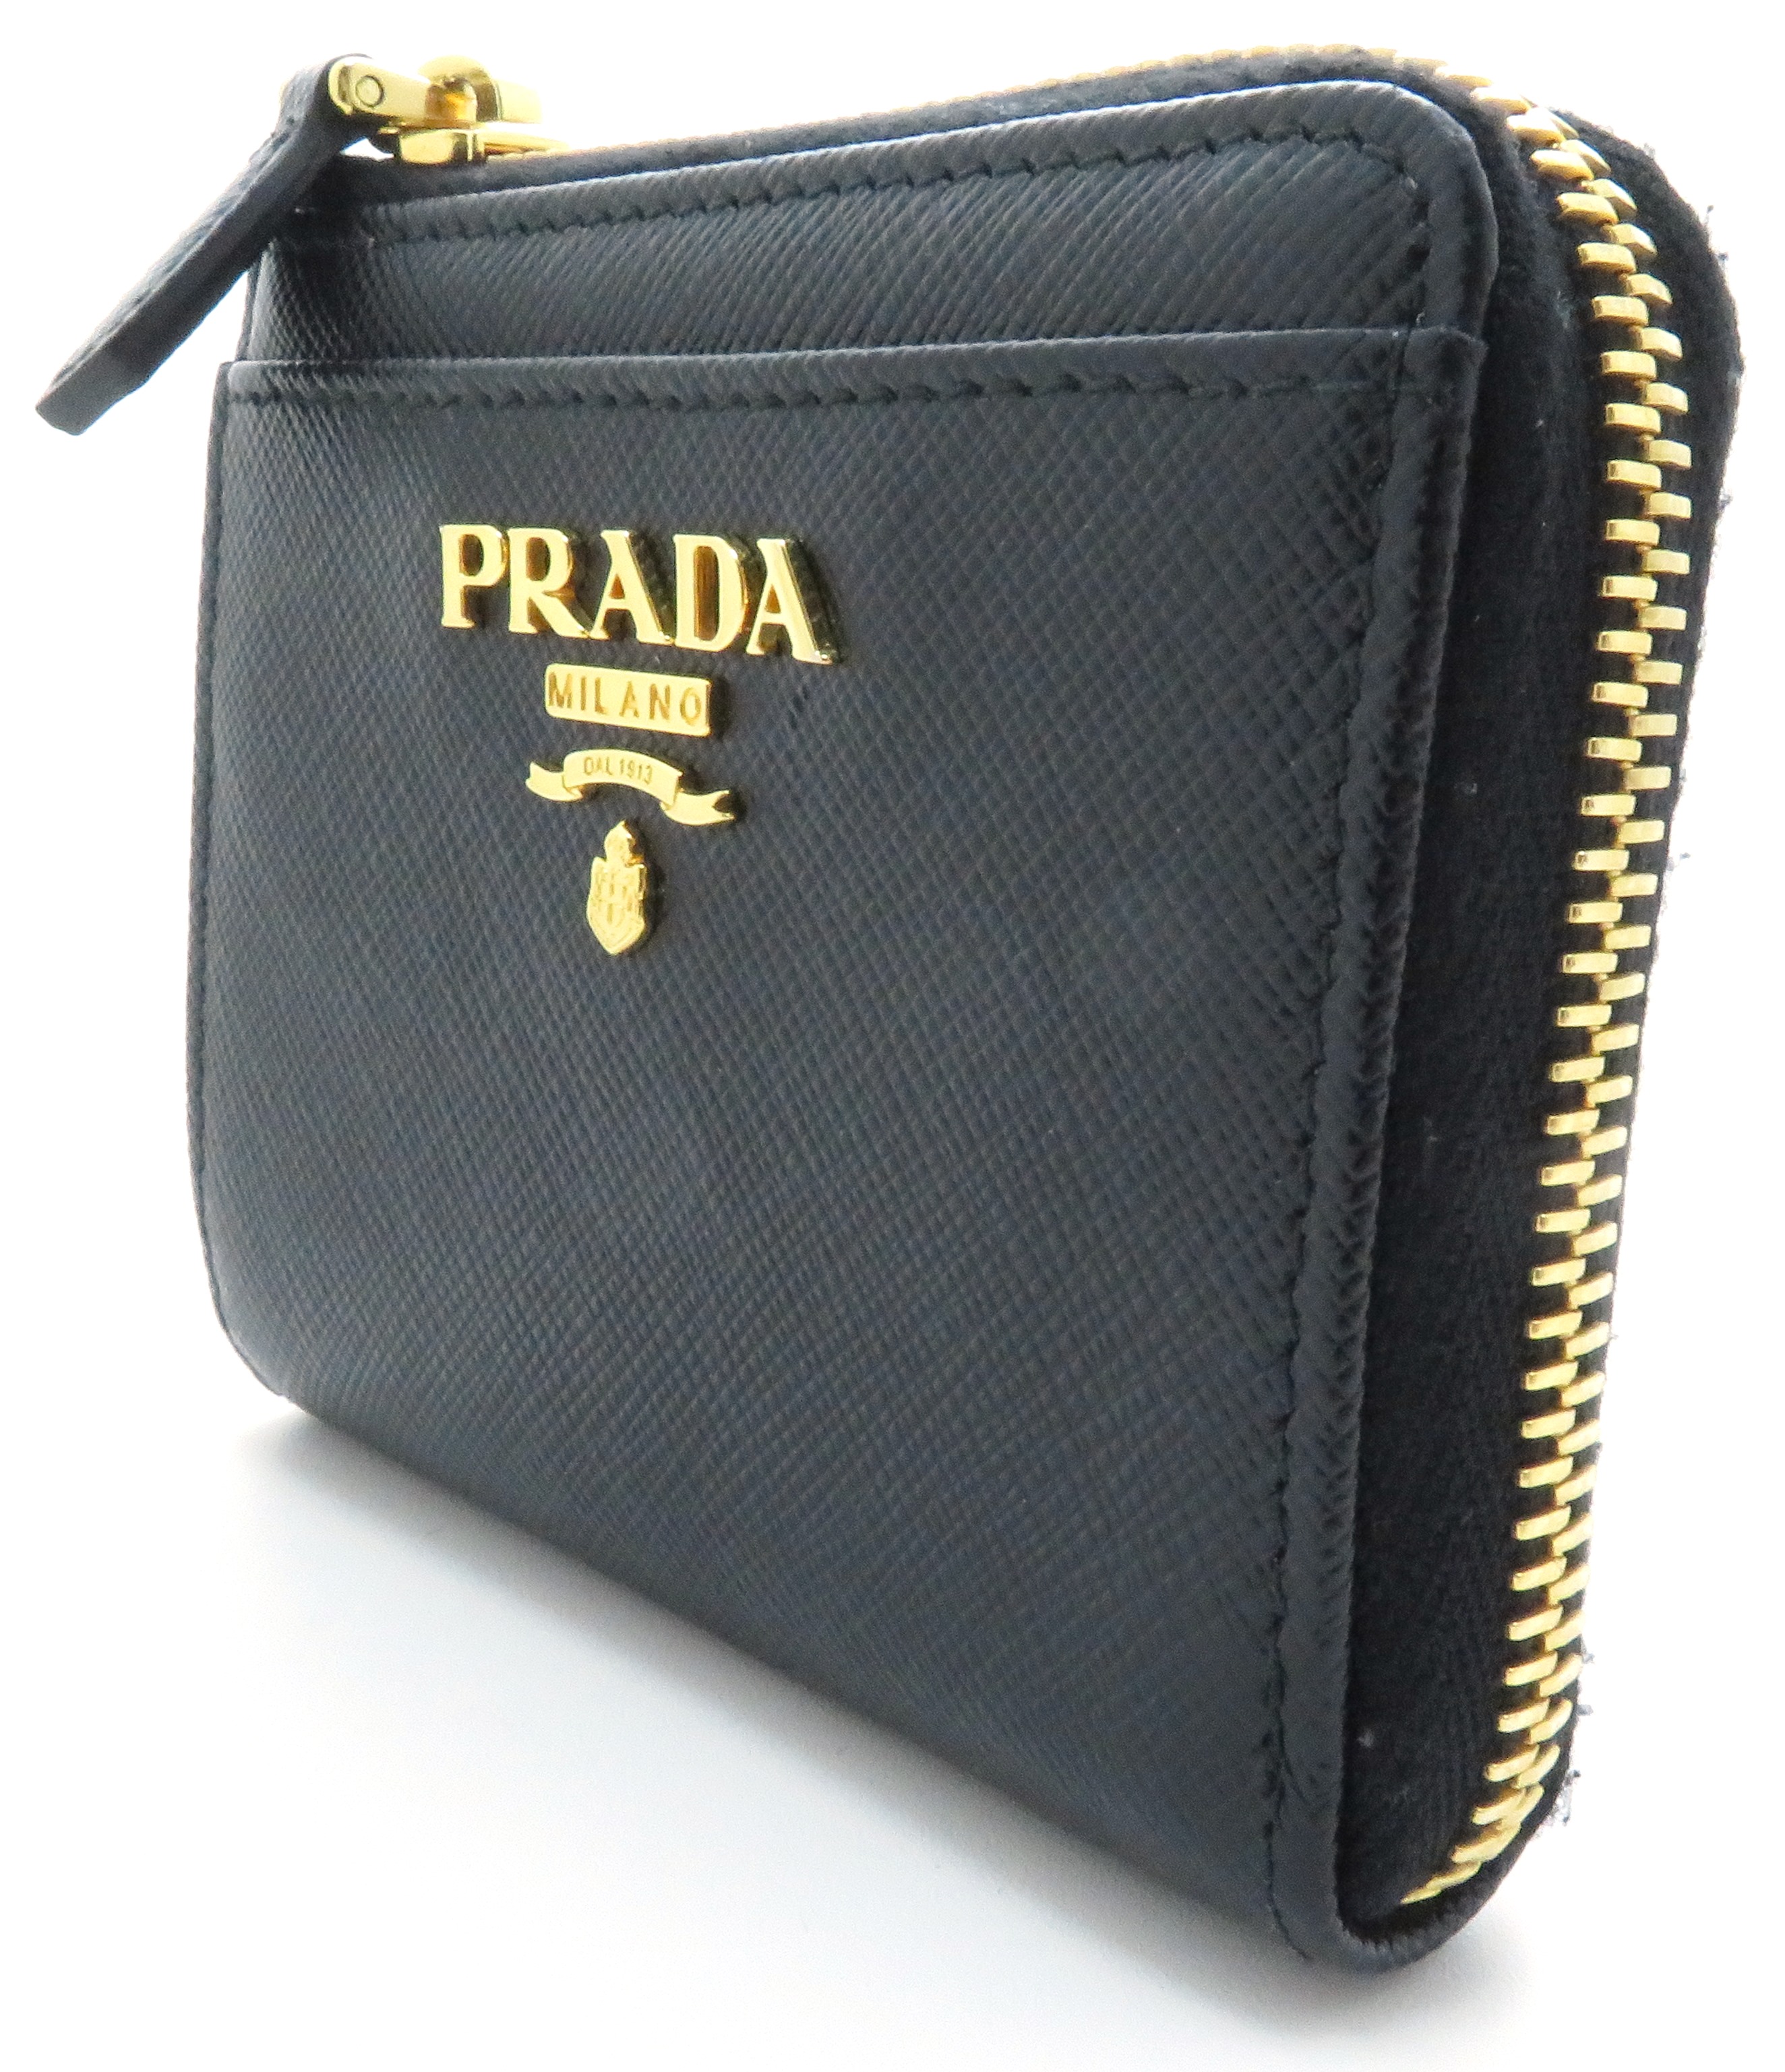 PRADA プラダ サフィアーノコインケース 1ML025 ブラック カーフ 【433